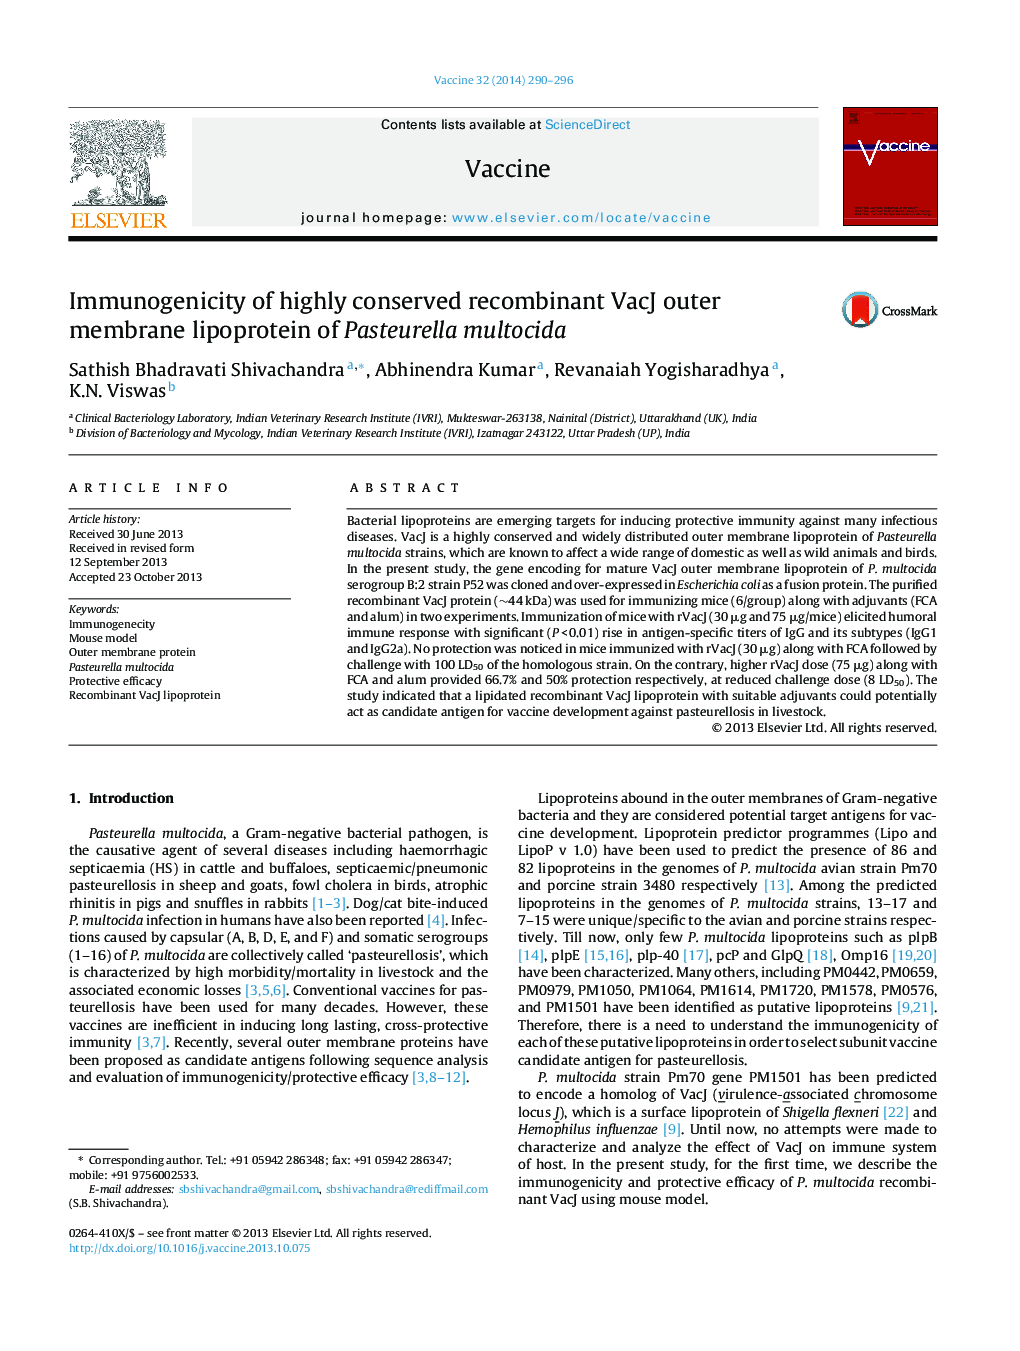 ایمنی زیستی لیپوپروتئین غشایی بیرونی نوترکیب بیولوژیک پاستورلا مولتوسیدا 